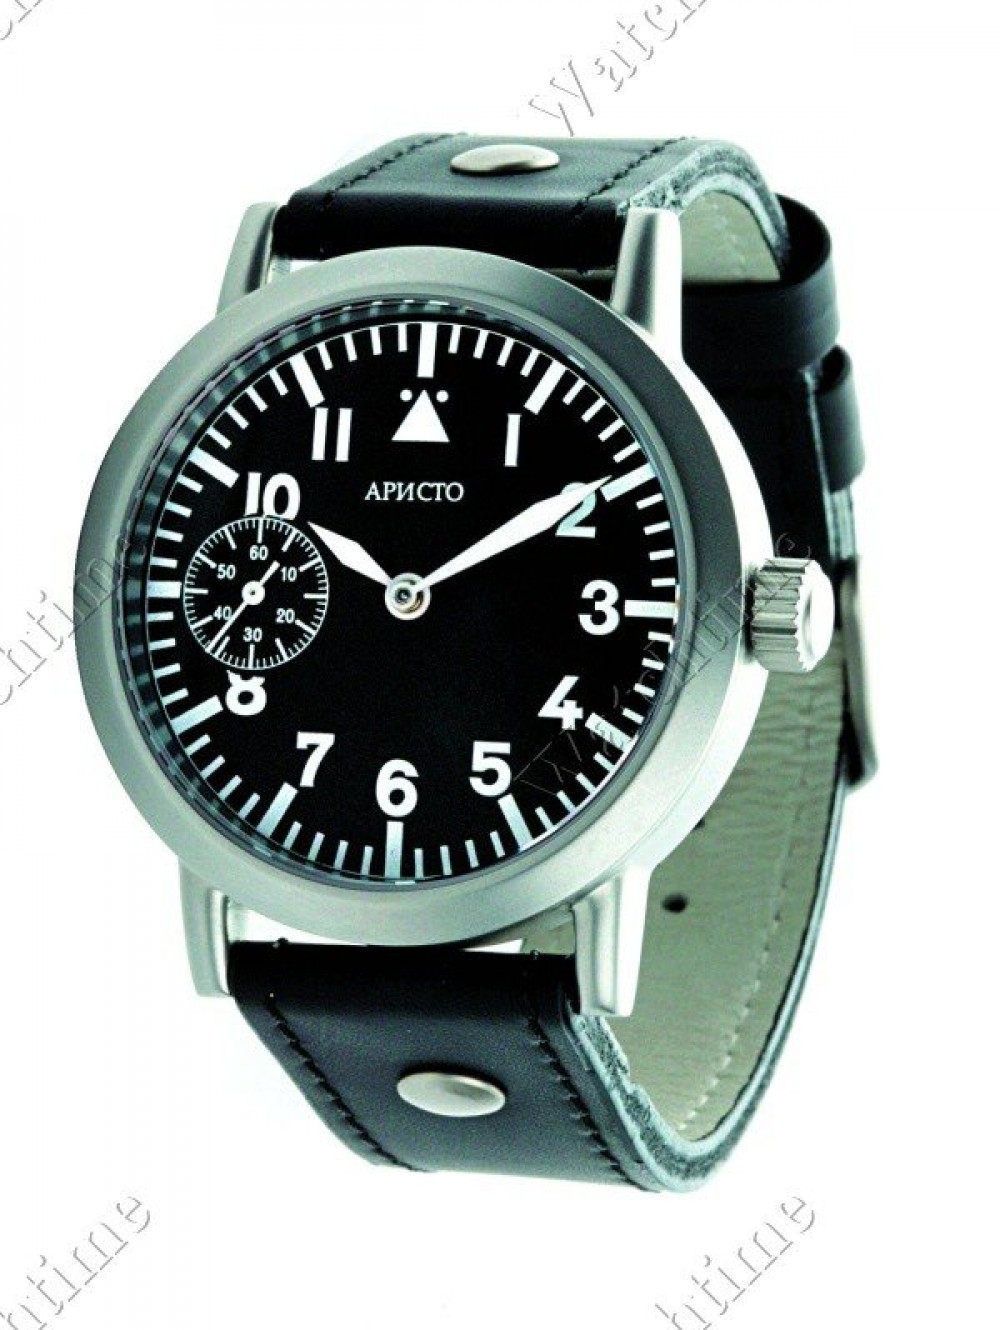 Zegarek firmy Apucto, model Flieger